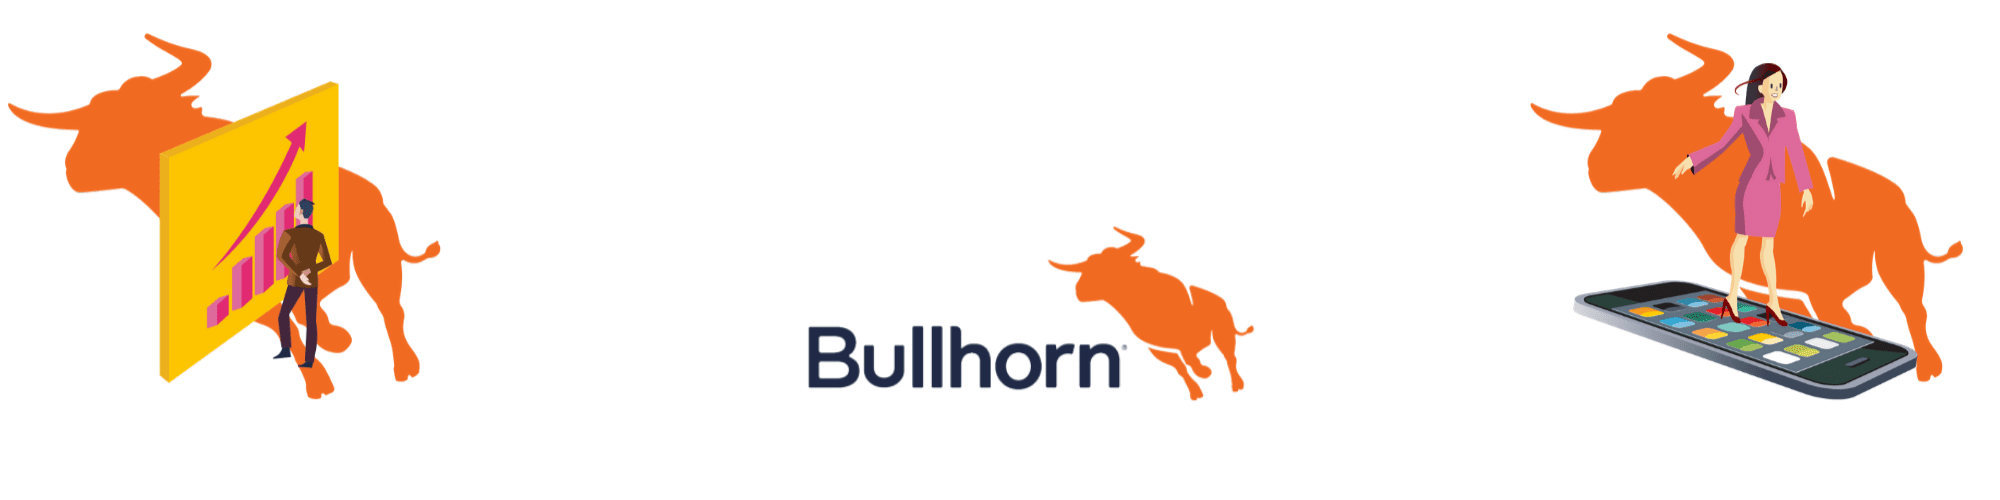 Best Bullhorn Training Tips